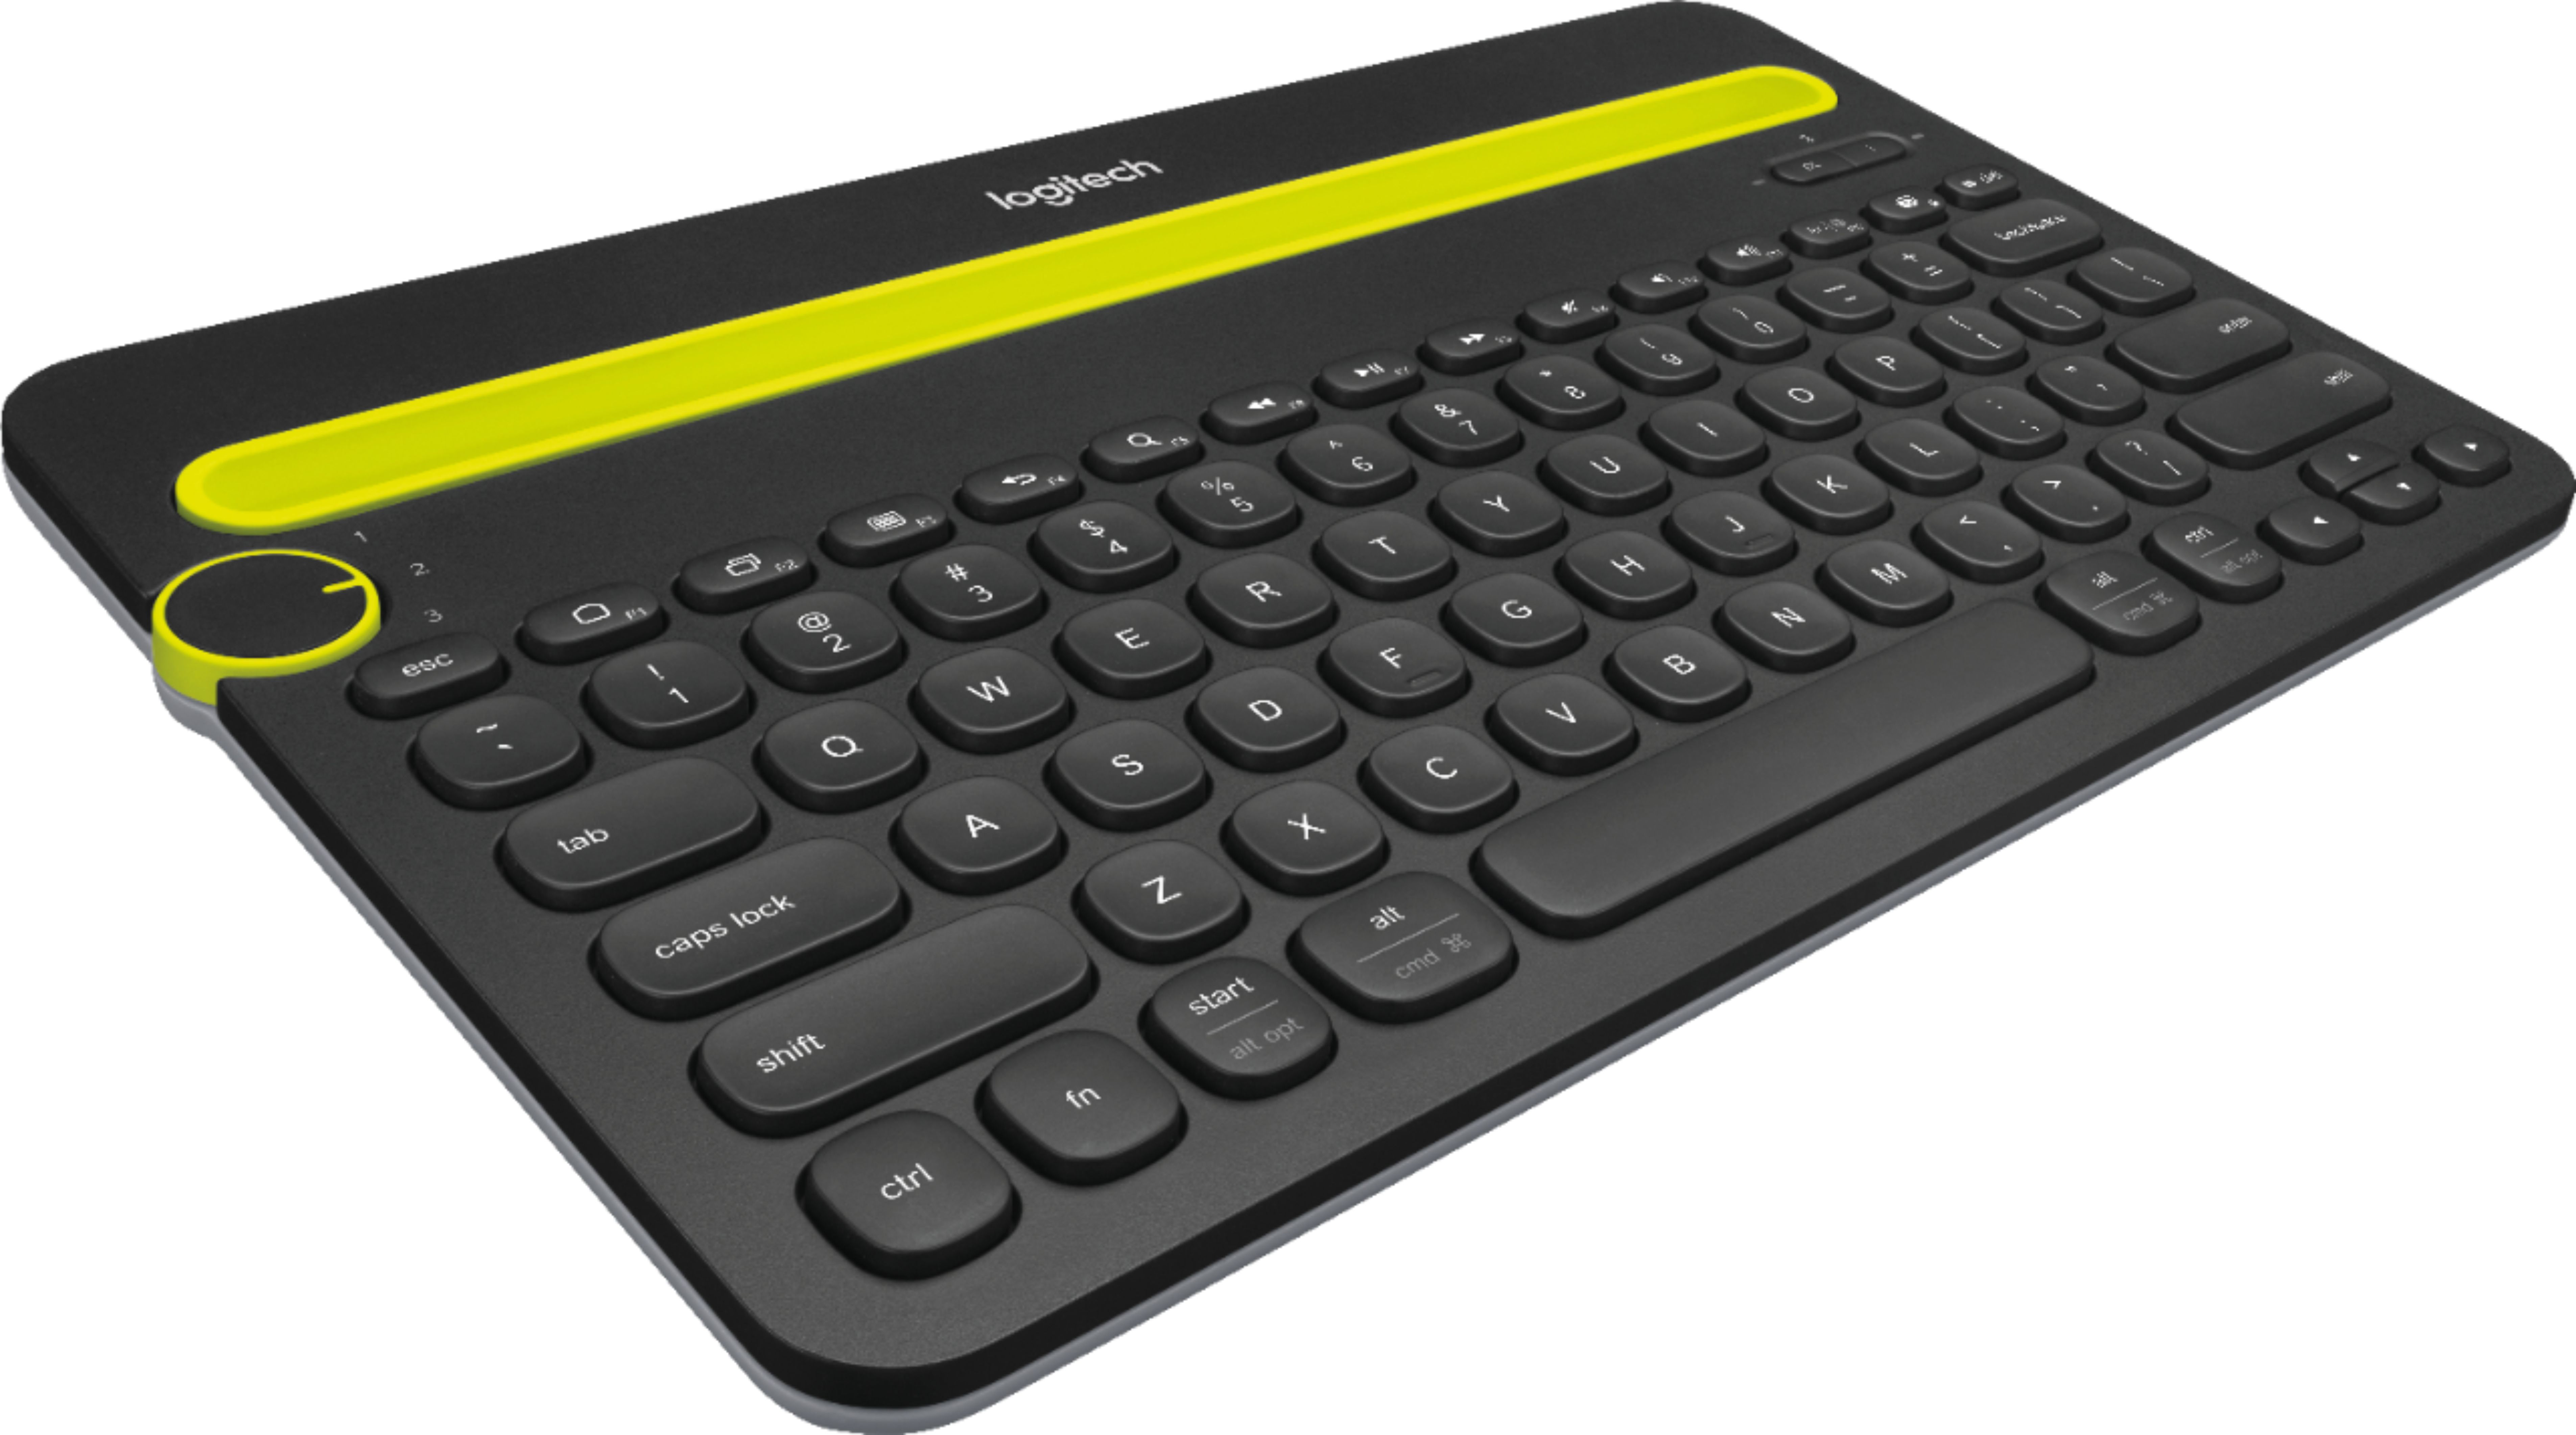 Angle View: Logitech - K750 Solar Full-size Wireless Scissor Keyboard - Black